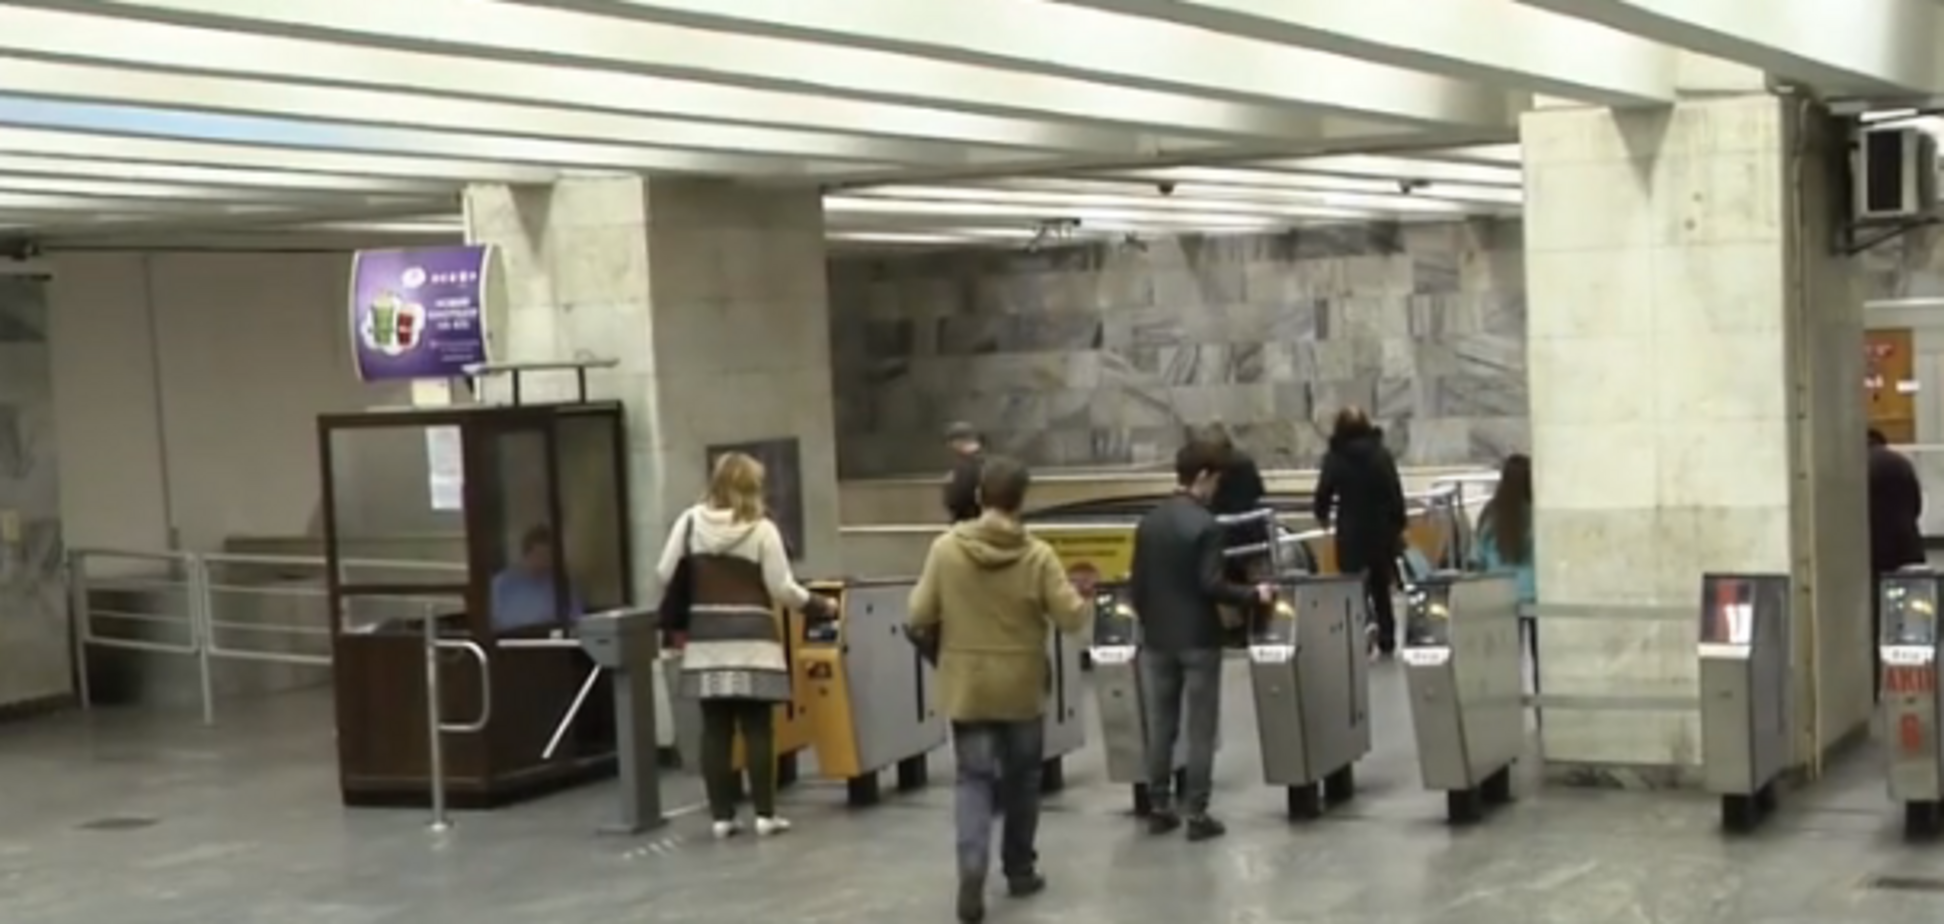 Людей охватила паника: в метро Киева произошло ЧП с 10 пострадавшими